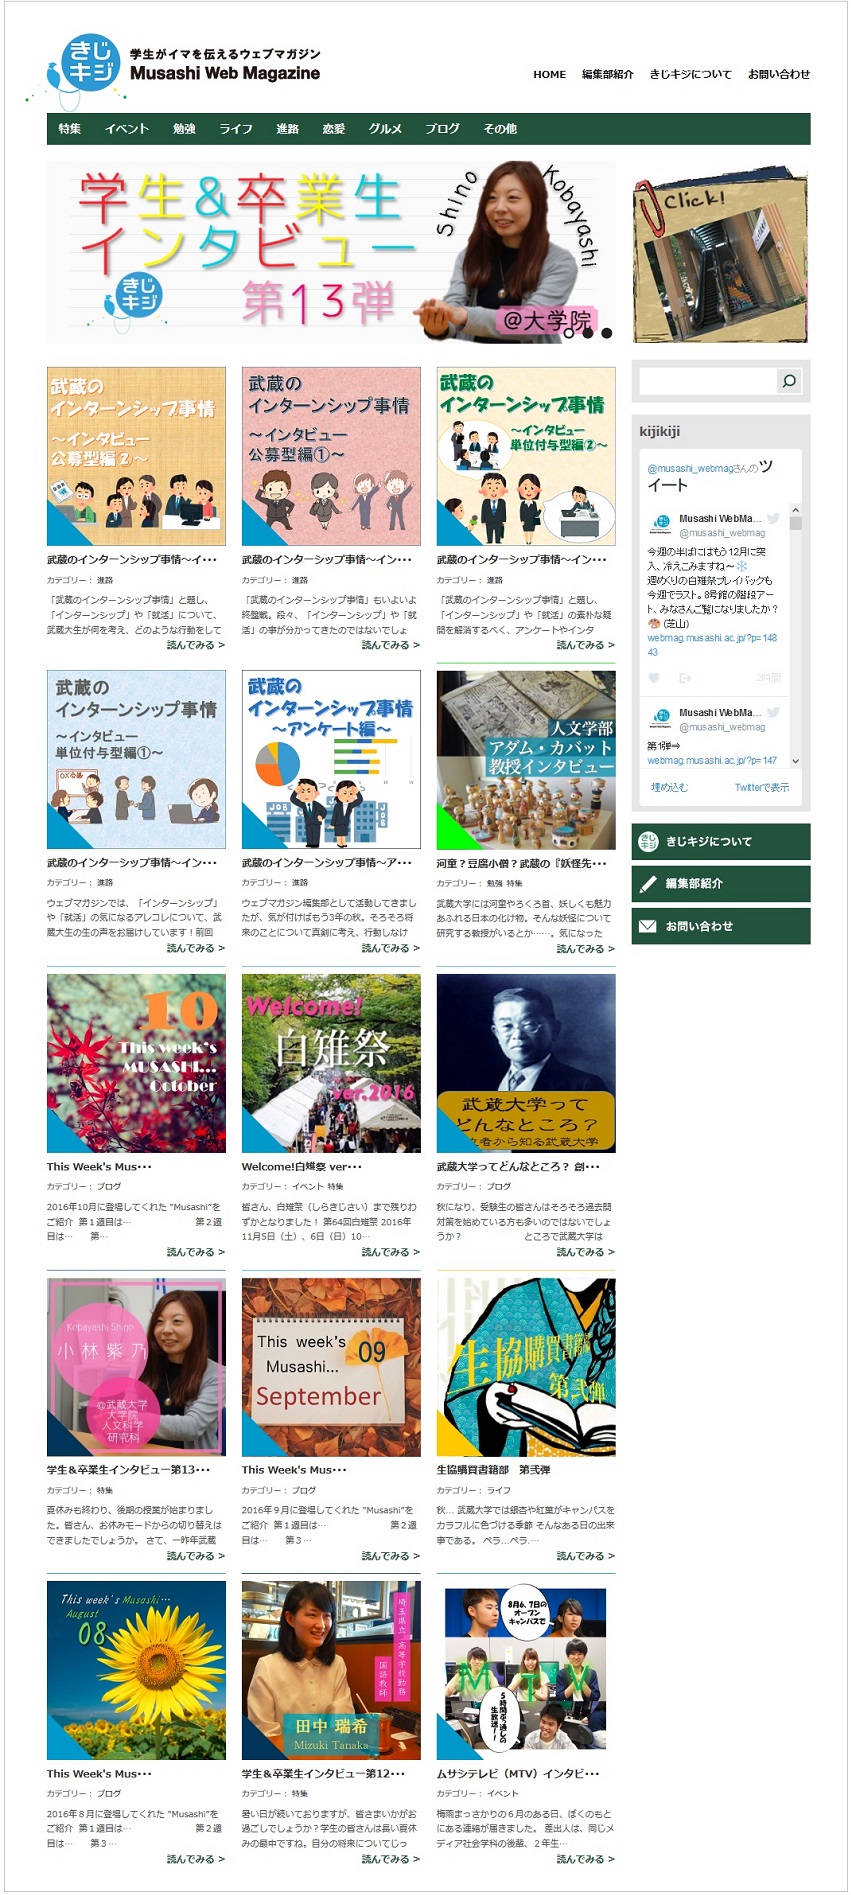 学生の視点で大学のリアルな姿を伝えるWebマガジン「きじキジ」が、大学や江古田の新たな魅力を掘り起こす -- 武蔵大学